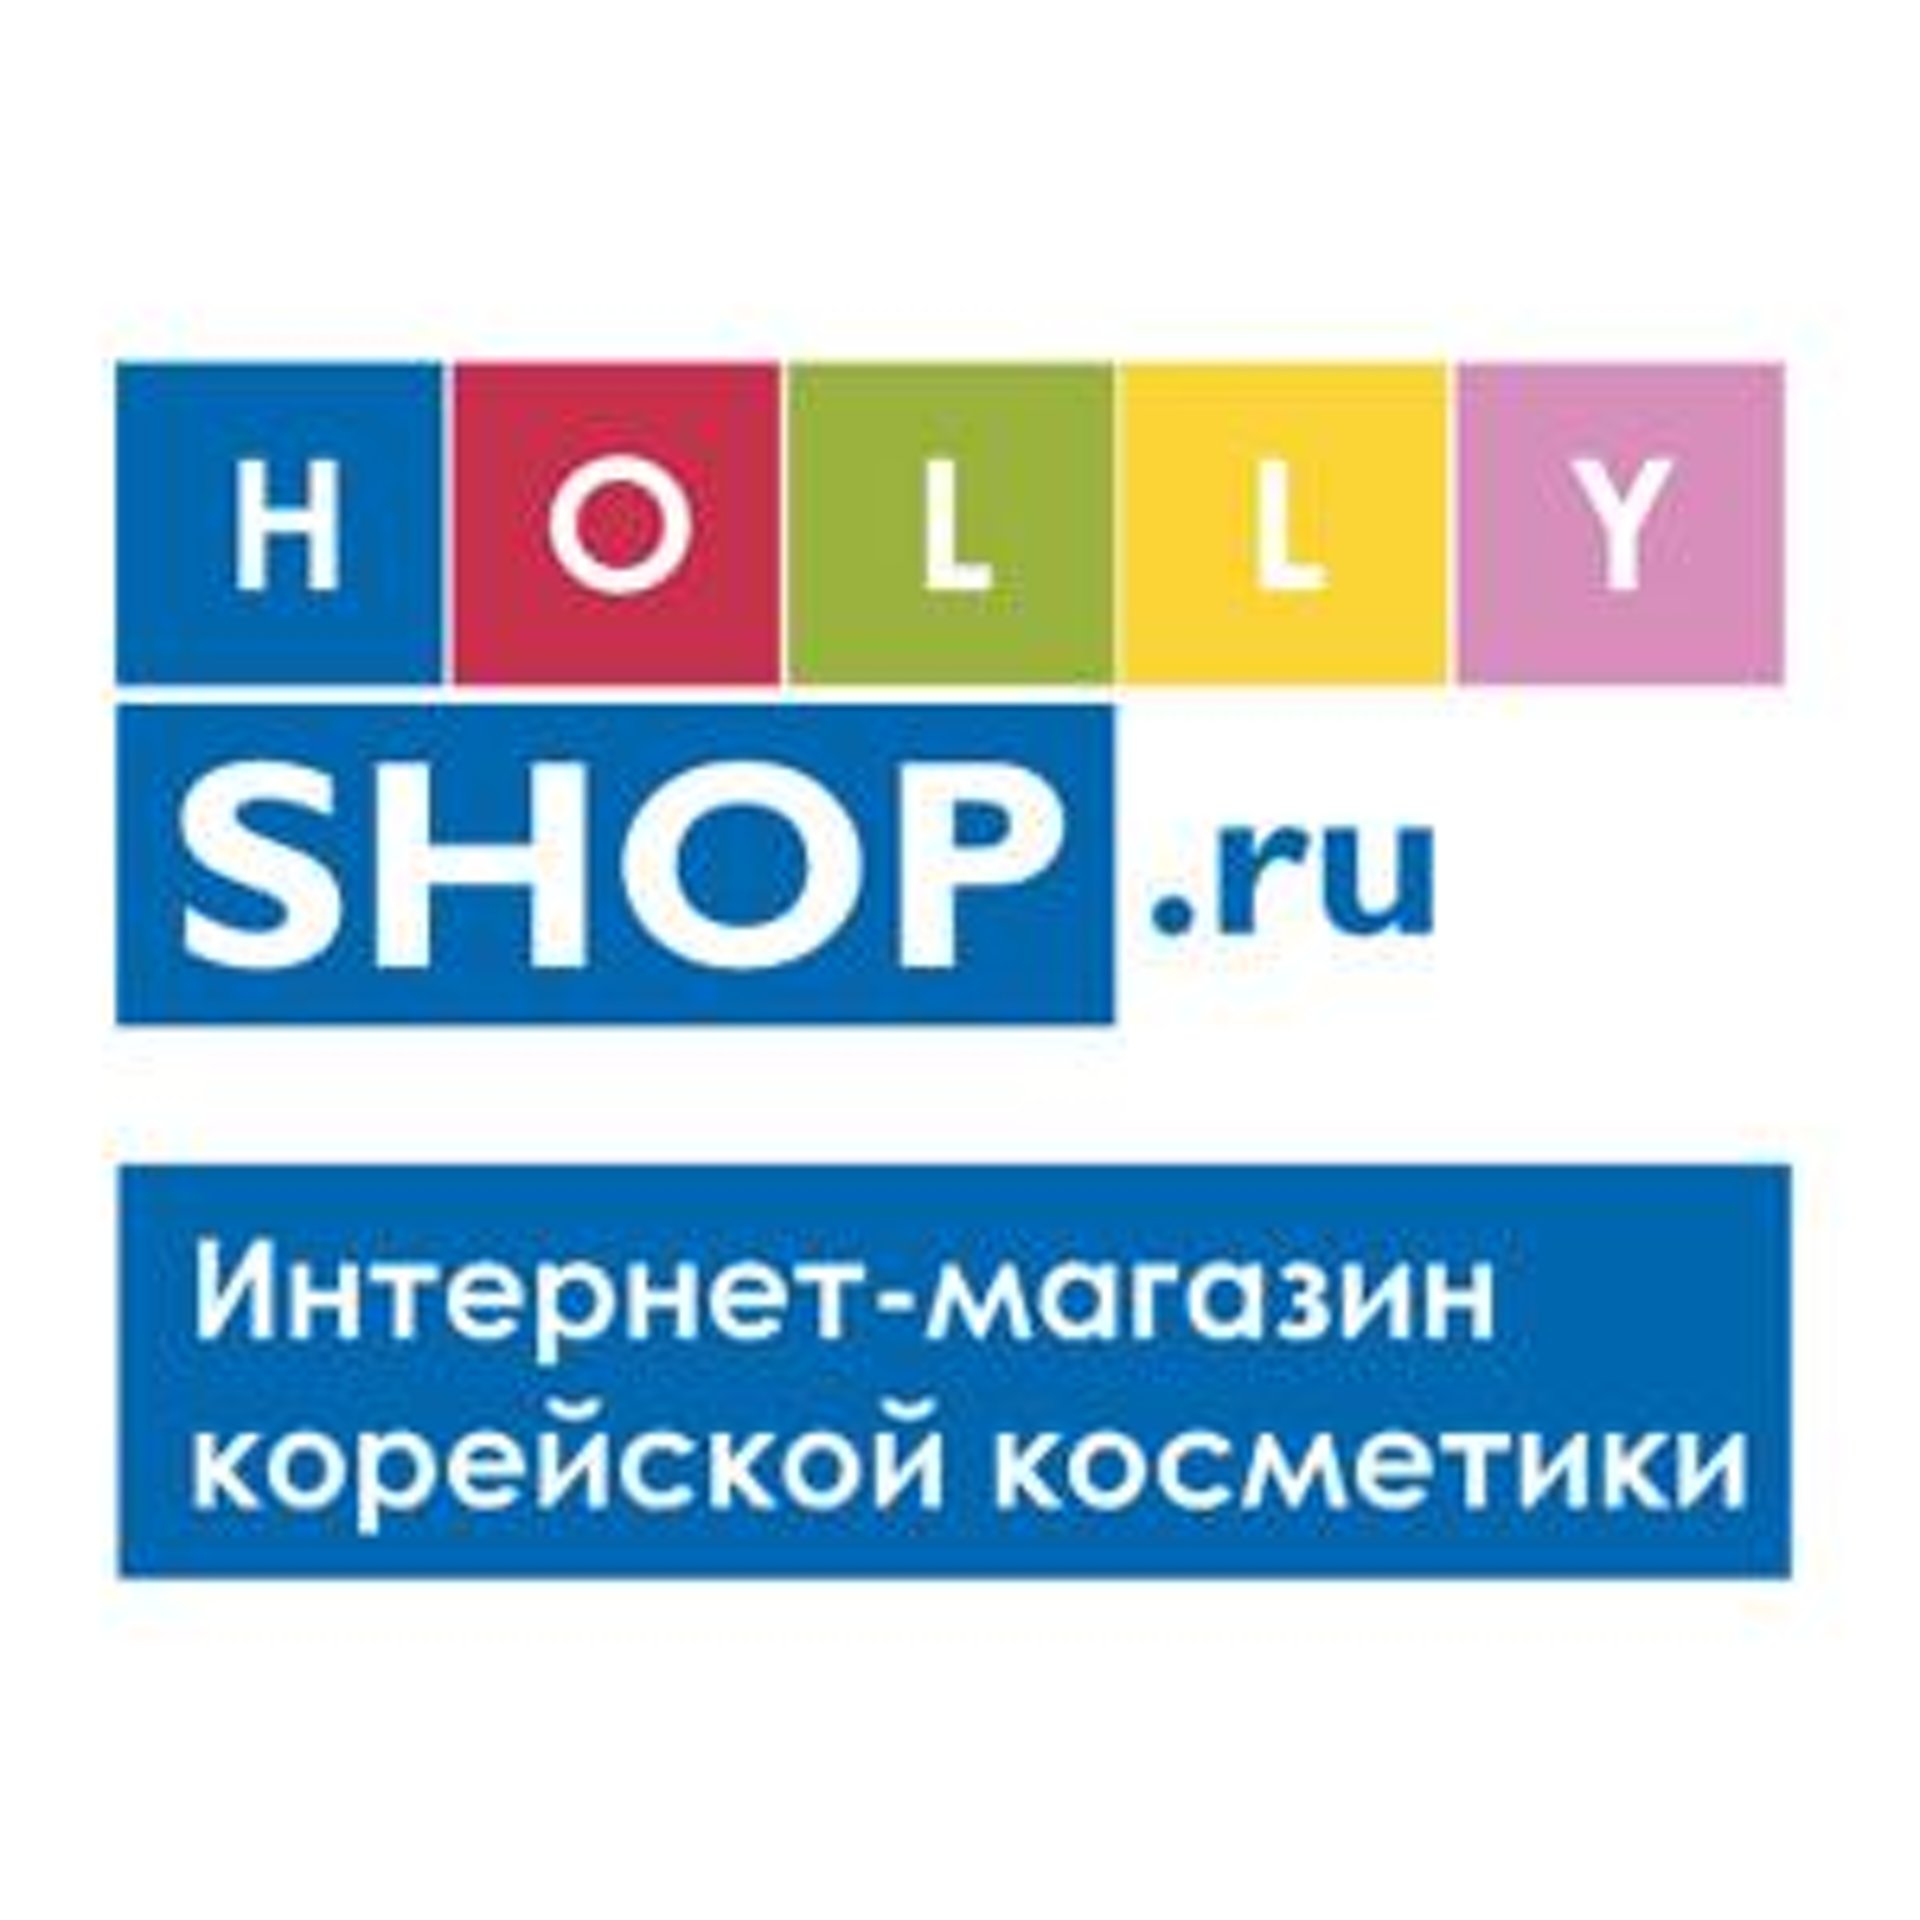 Hollyshop Ru Интернет Магазин Корейской Косметики